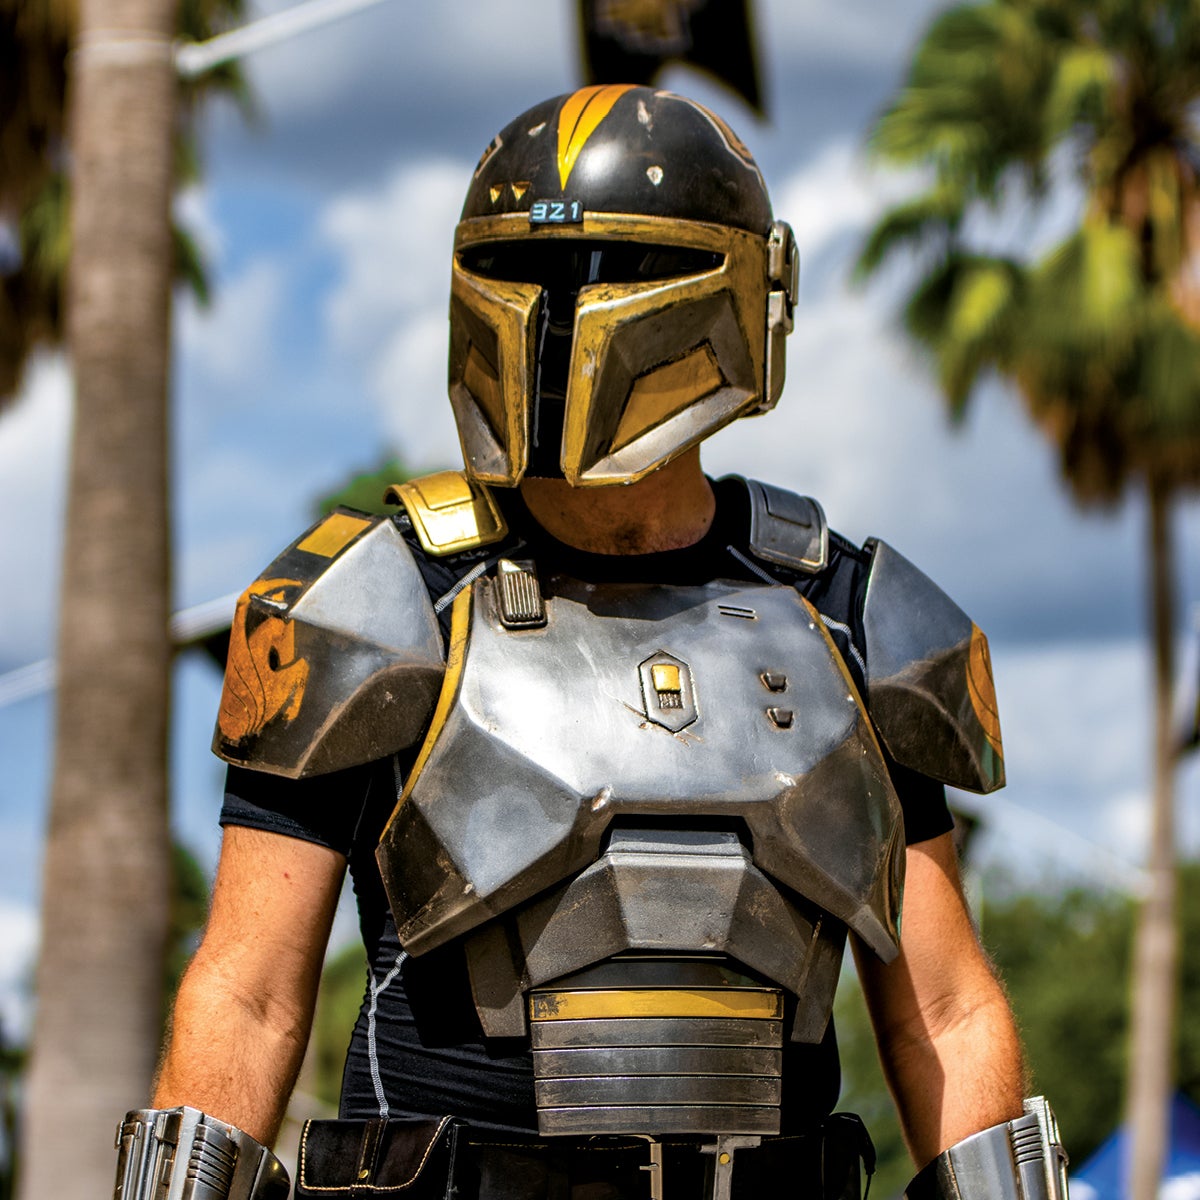 A fan wears a Knight helmet and armor